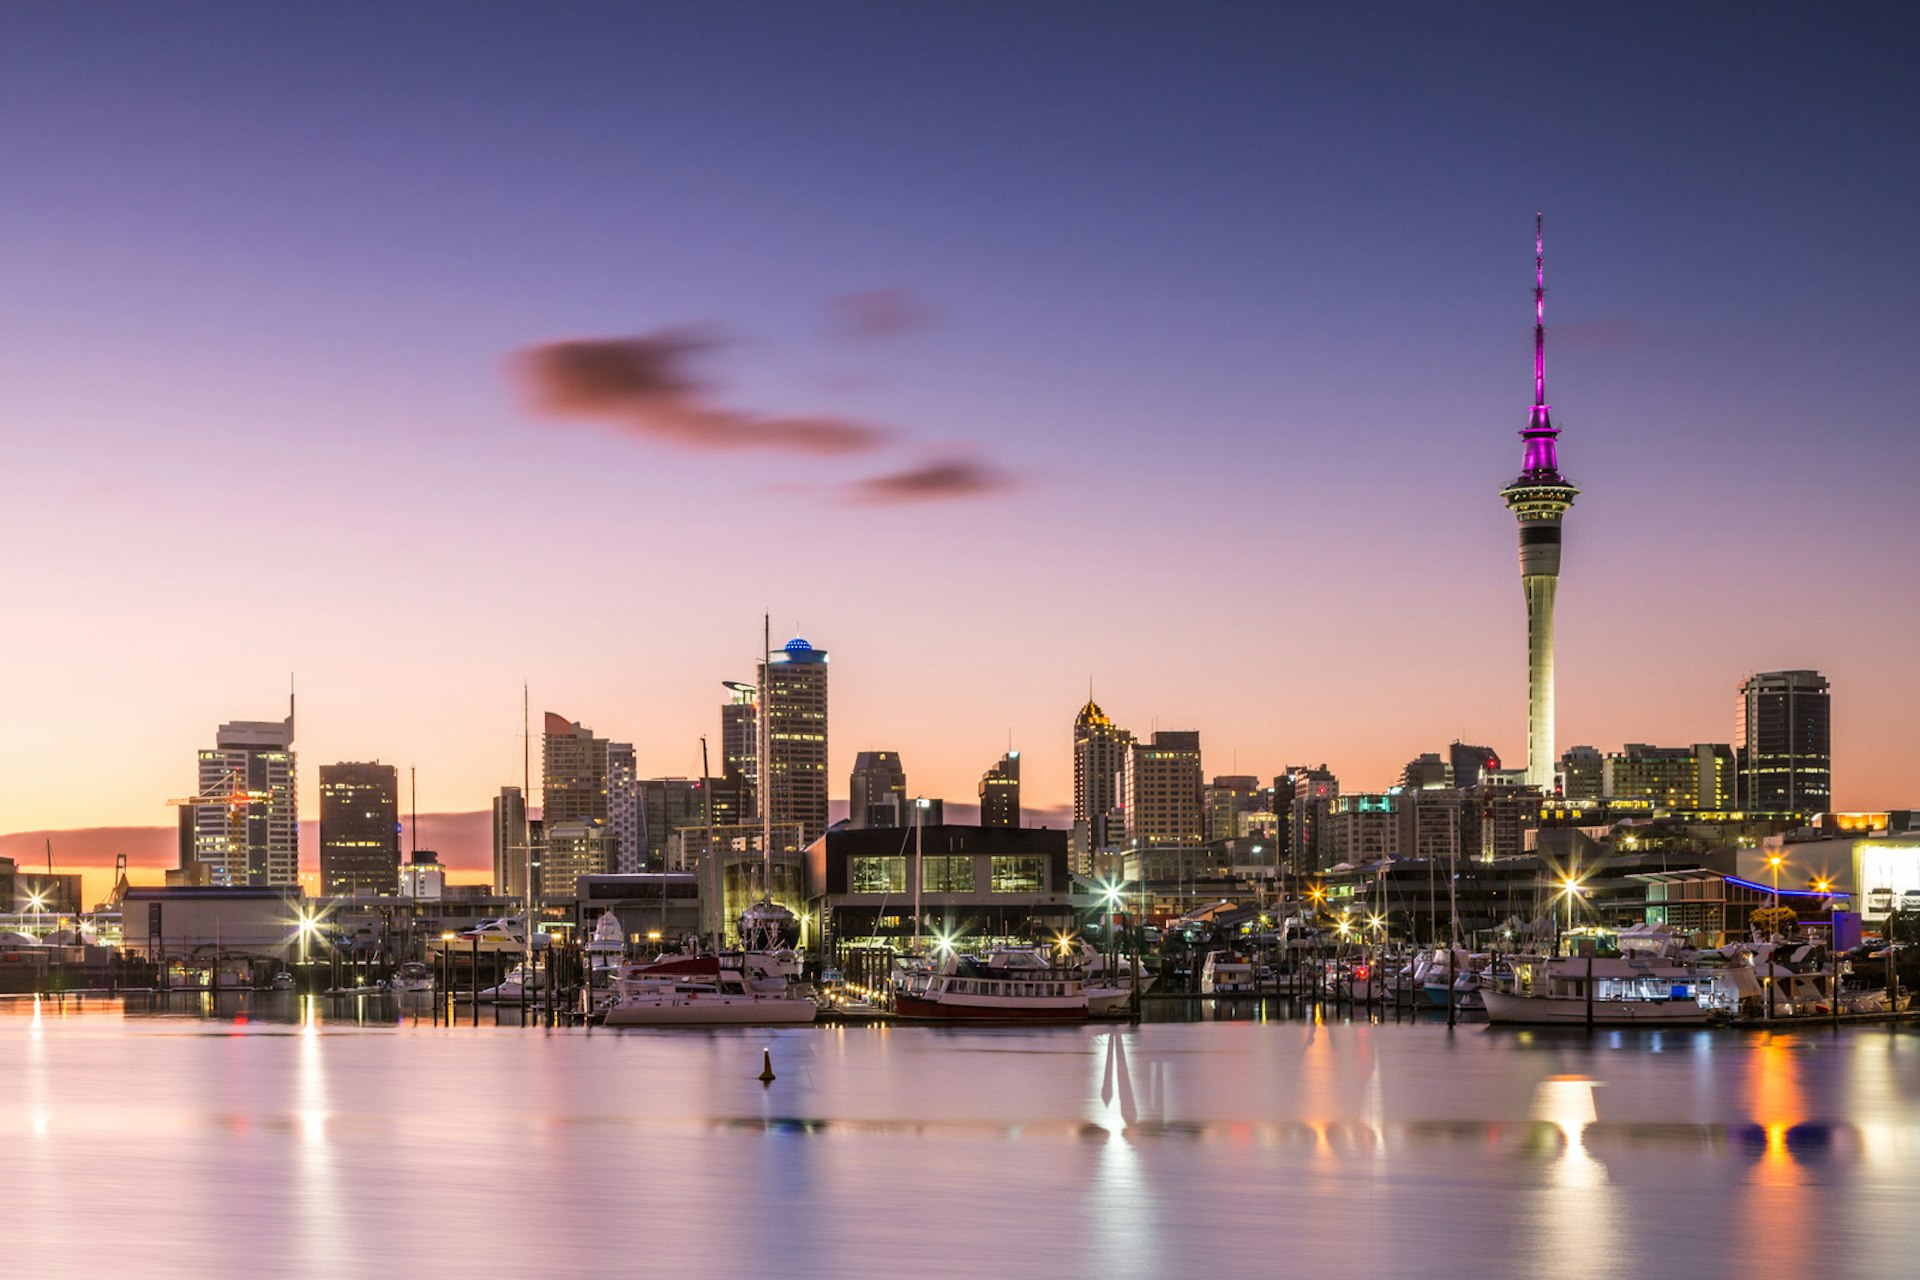 Auckland skyline at dusk